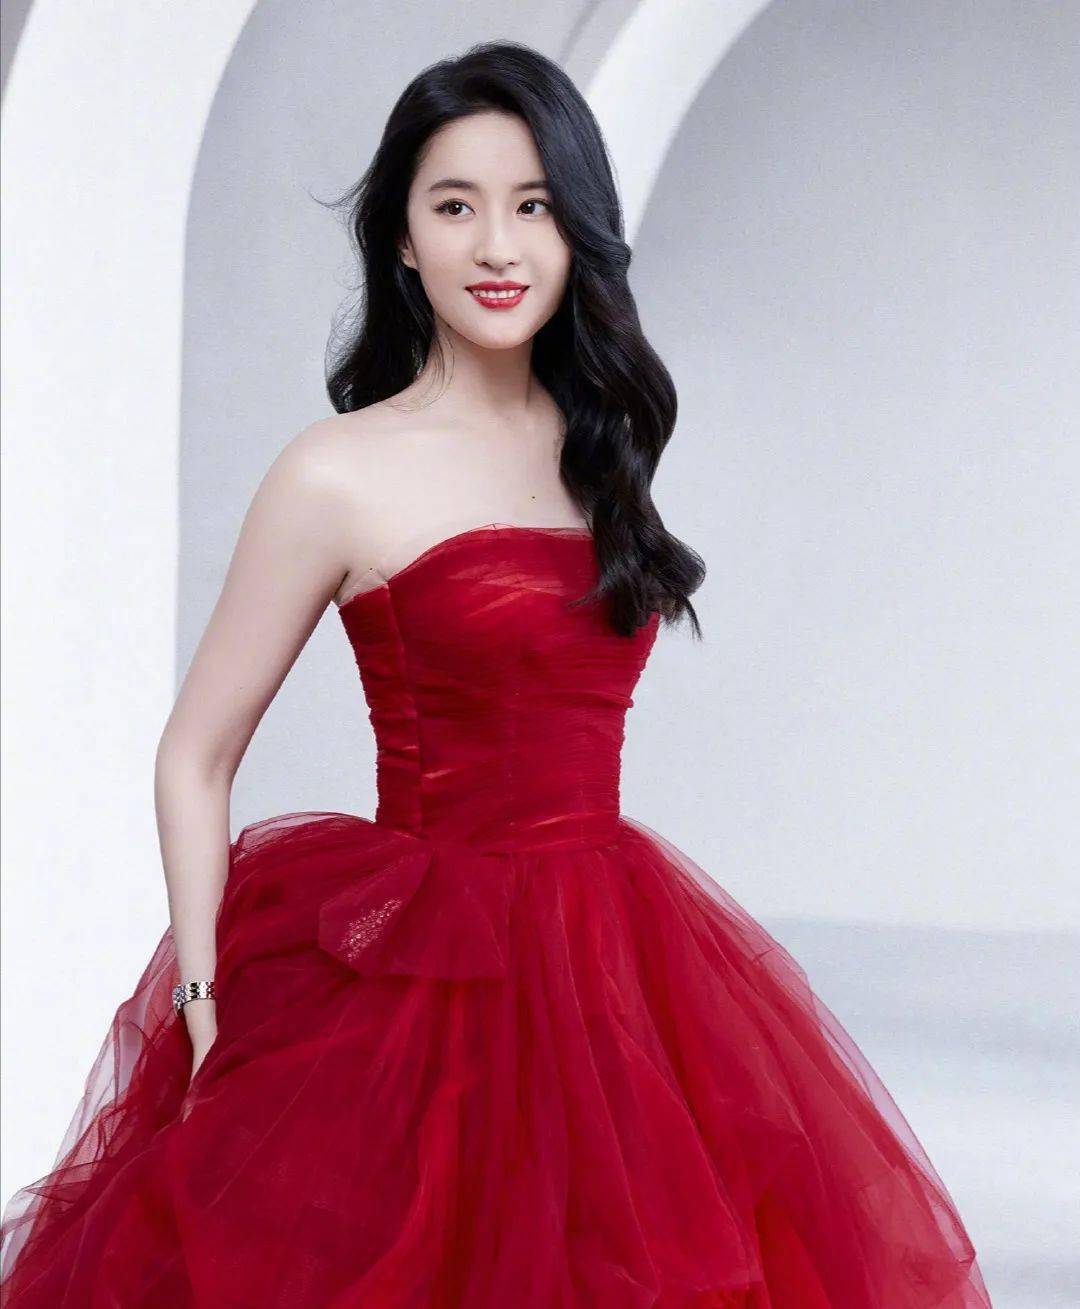 刘亦菲红裙造型太惊艳!